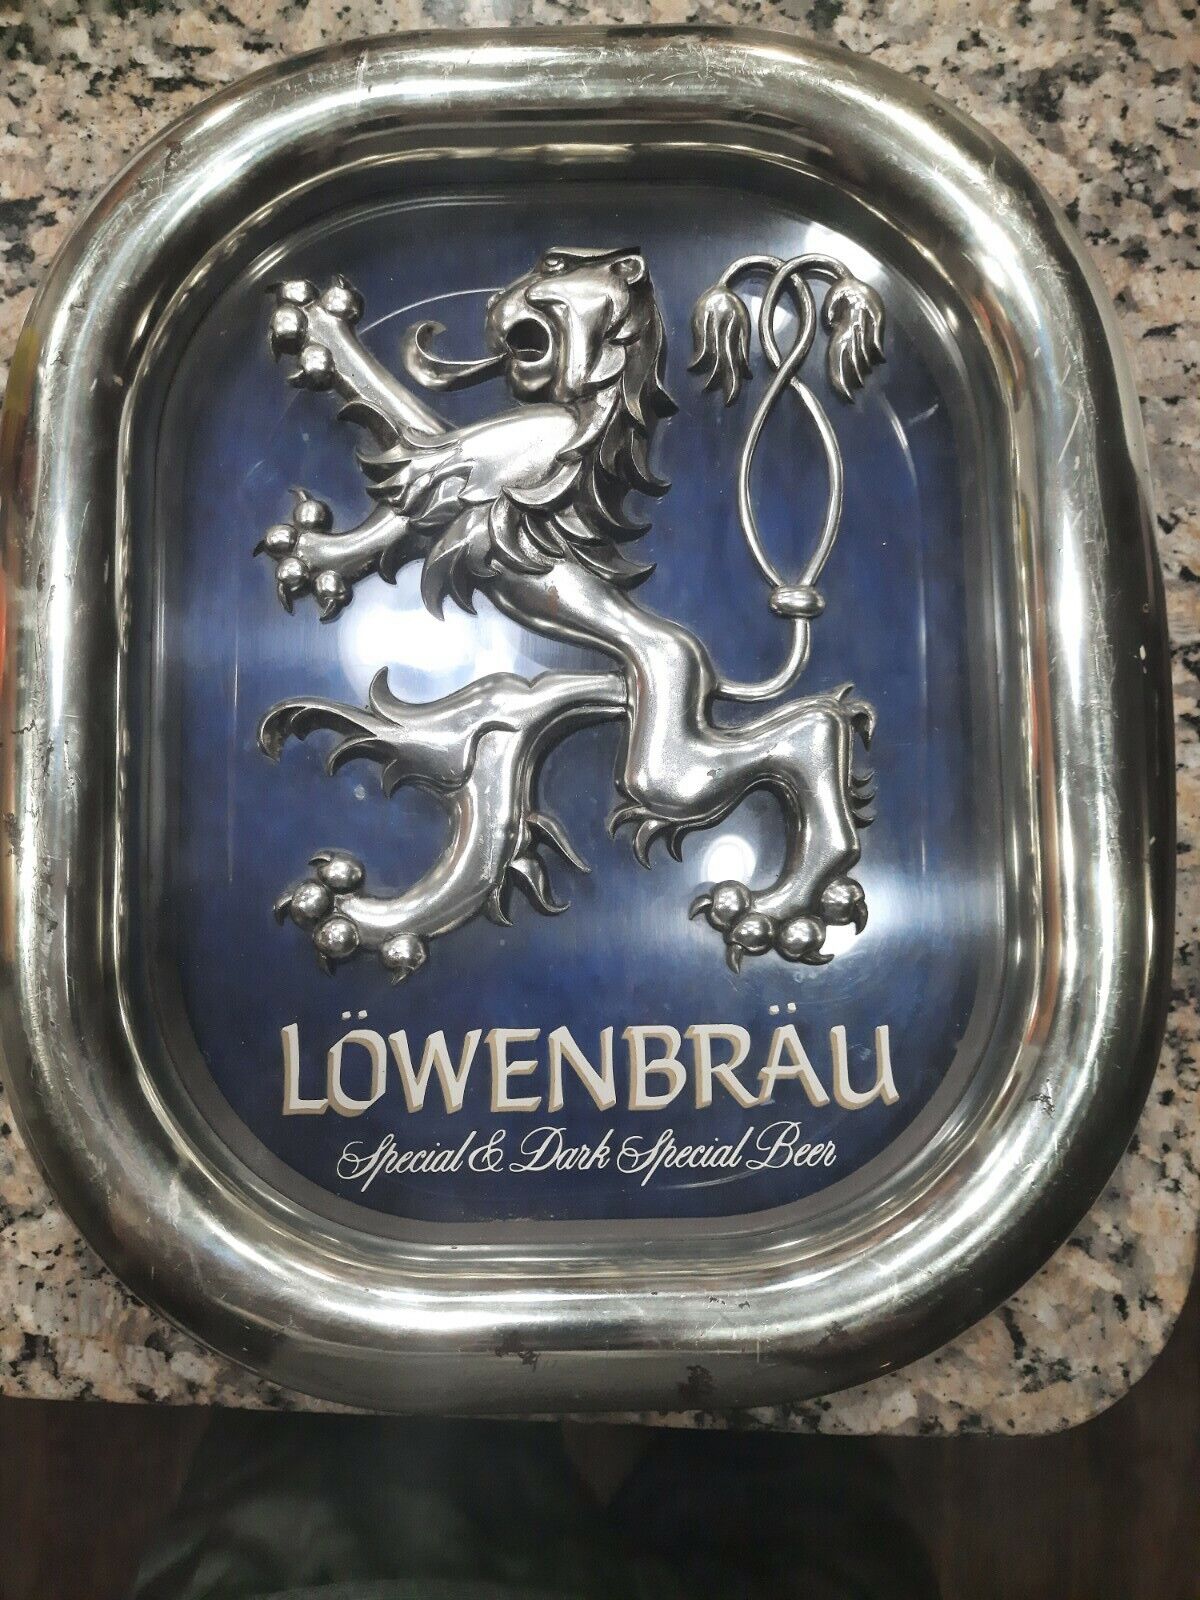 Lowenbrau Special & Dark Special Beer-Bar/Beer Sign